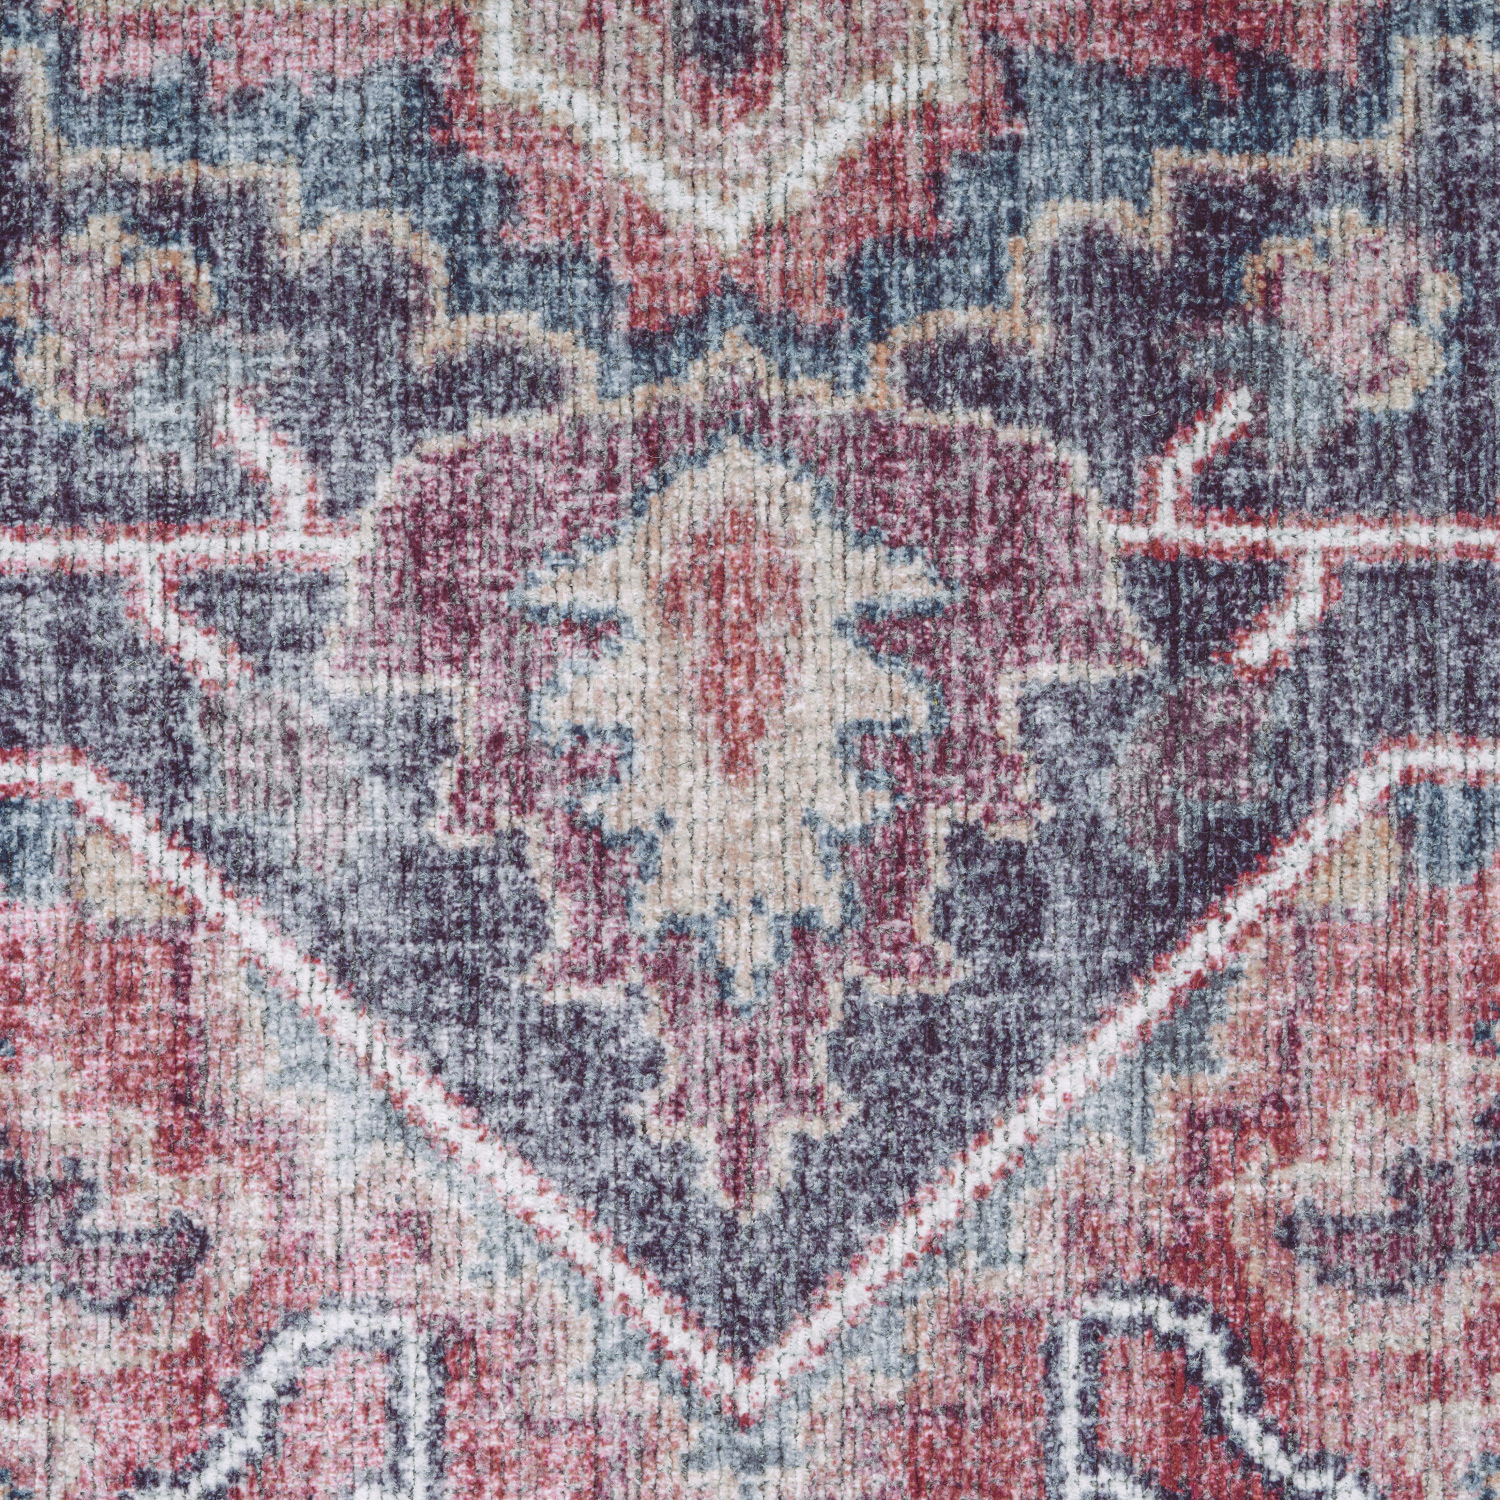 Teppich Esszimmer Orient Mandala Muster Modern Mehrfarbig Orientalisch